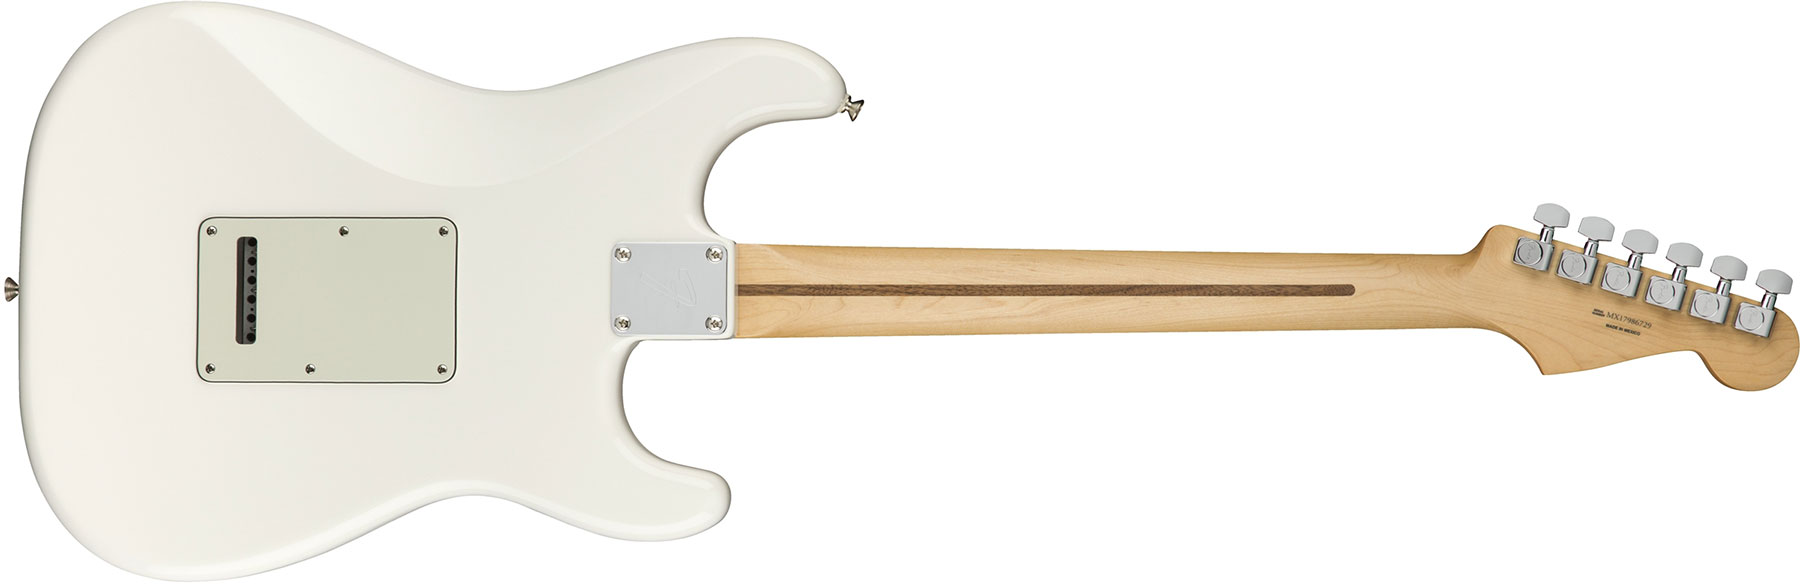 Fender Strat Player Lh Gaucher Mex Sss Mn - Polar White - E-Gitarre für Linkshänder - Variation 1